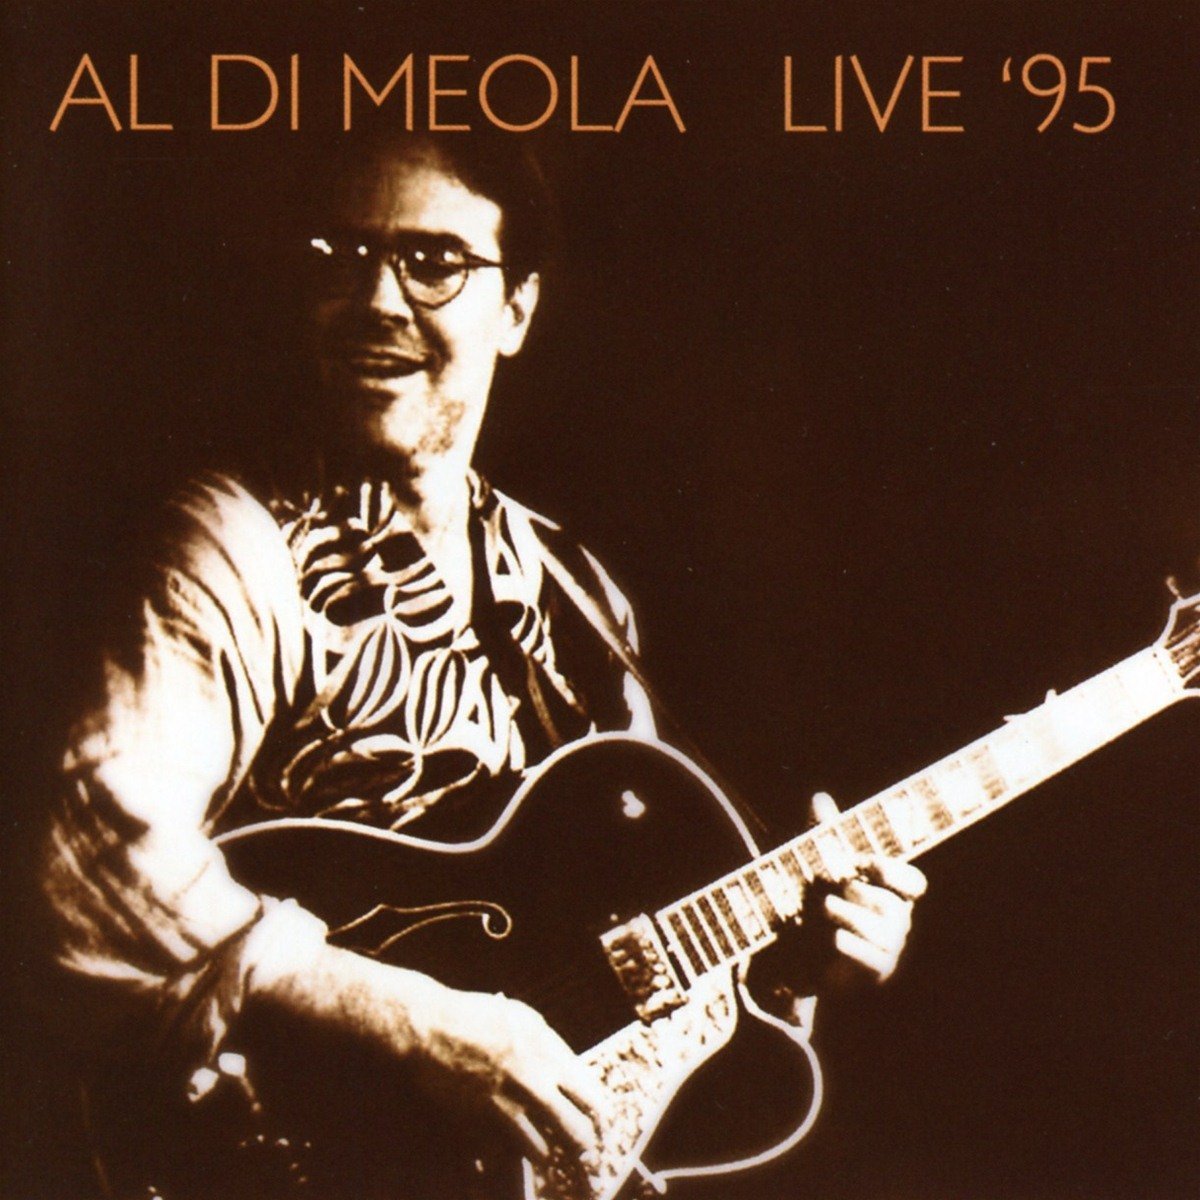 AL DI MEOLA - Live 95 cover 